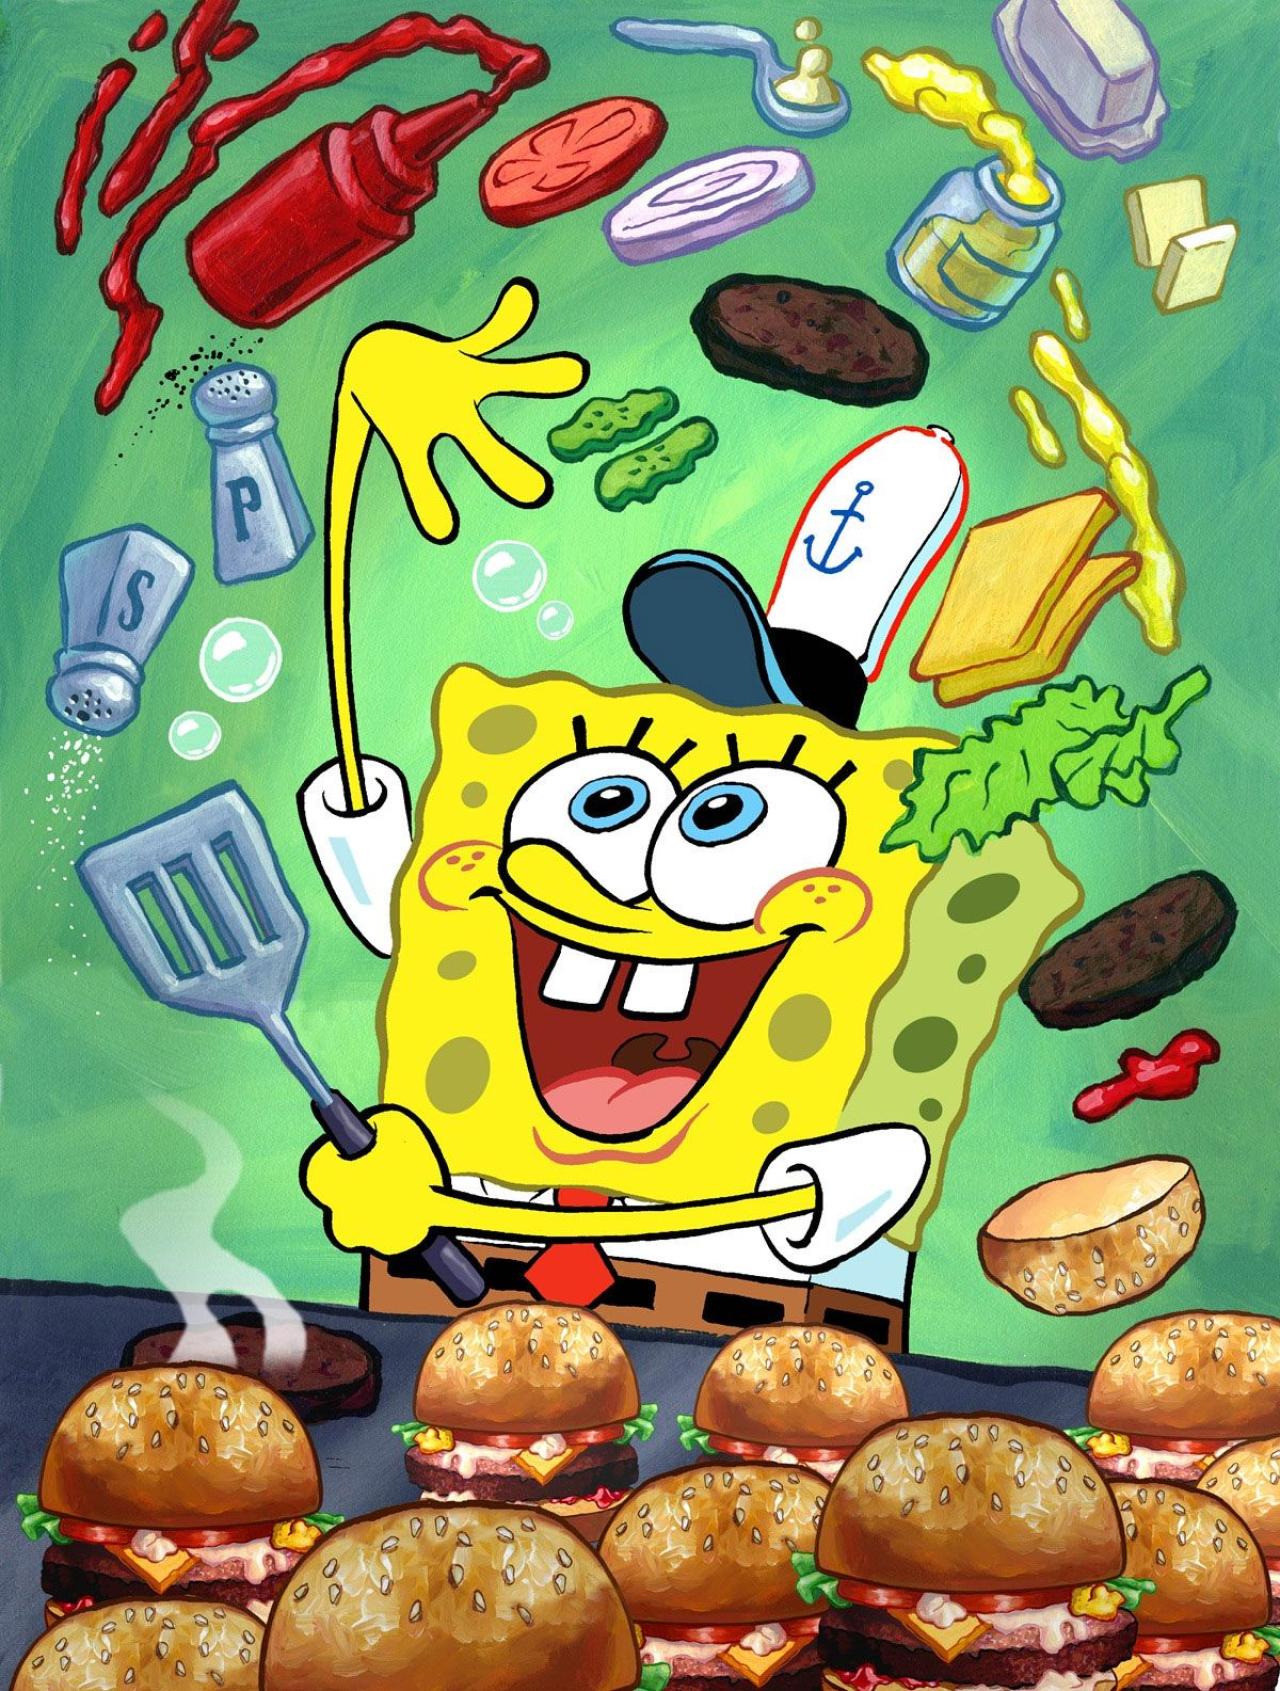 海绵宝宝正在做汉堡包 来源：spongebob.wikia.com